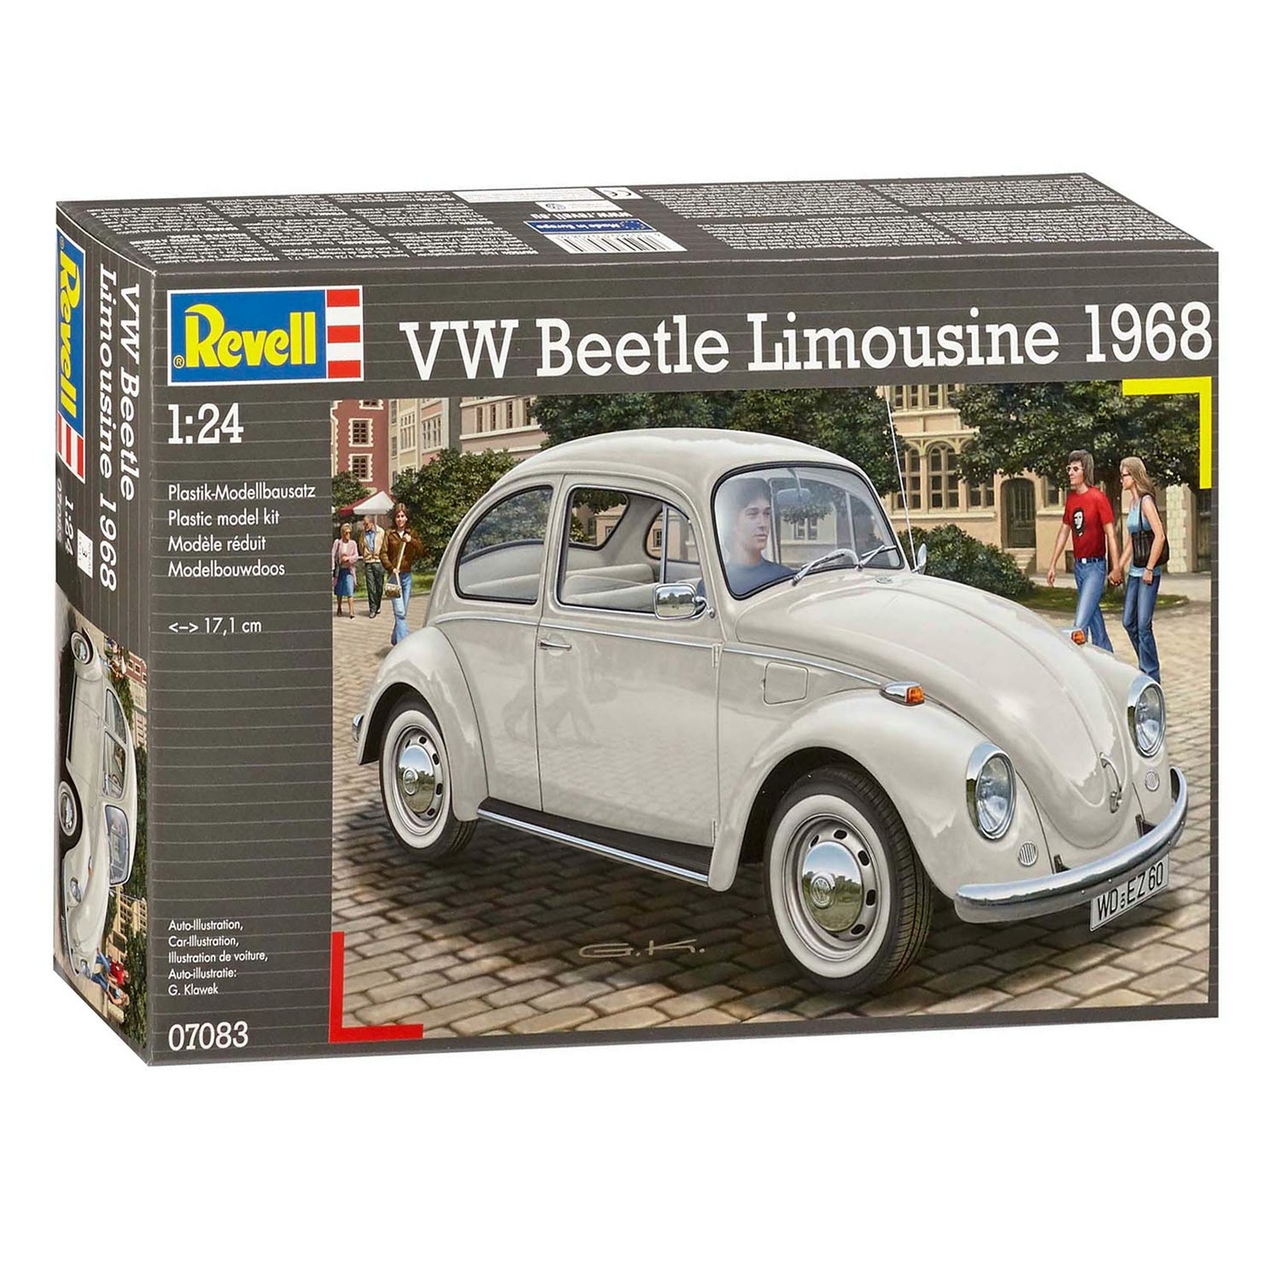 stapel verkoper marionet Revell Volkswagen Beetle Limousine 1968 - Het Speelgoedpaleis